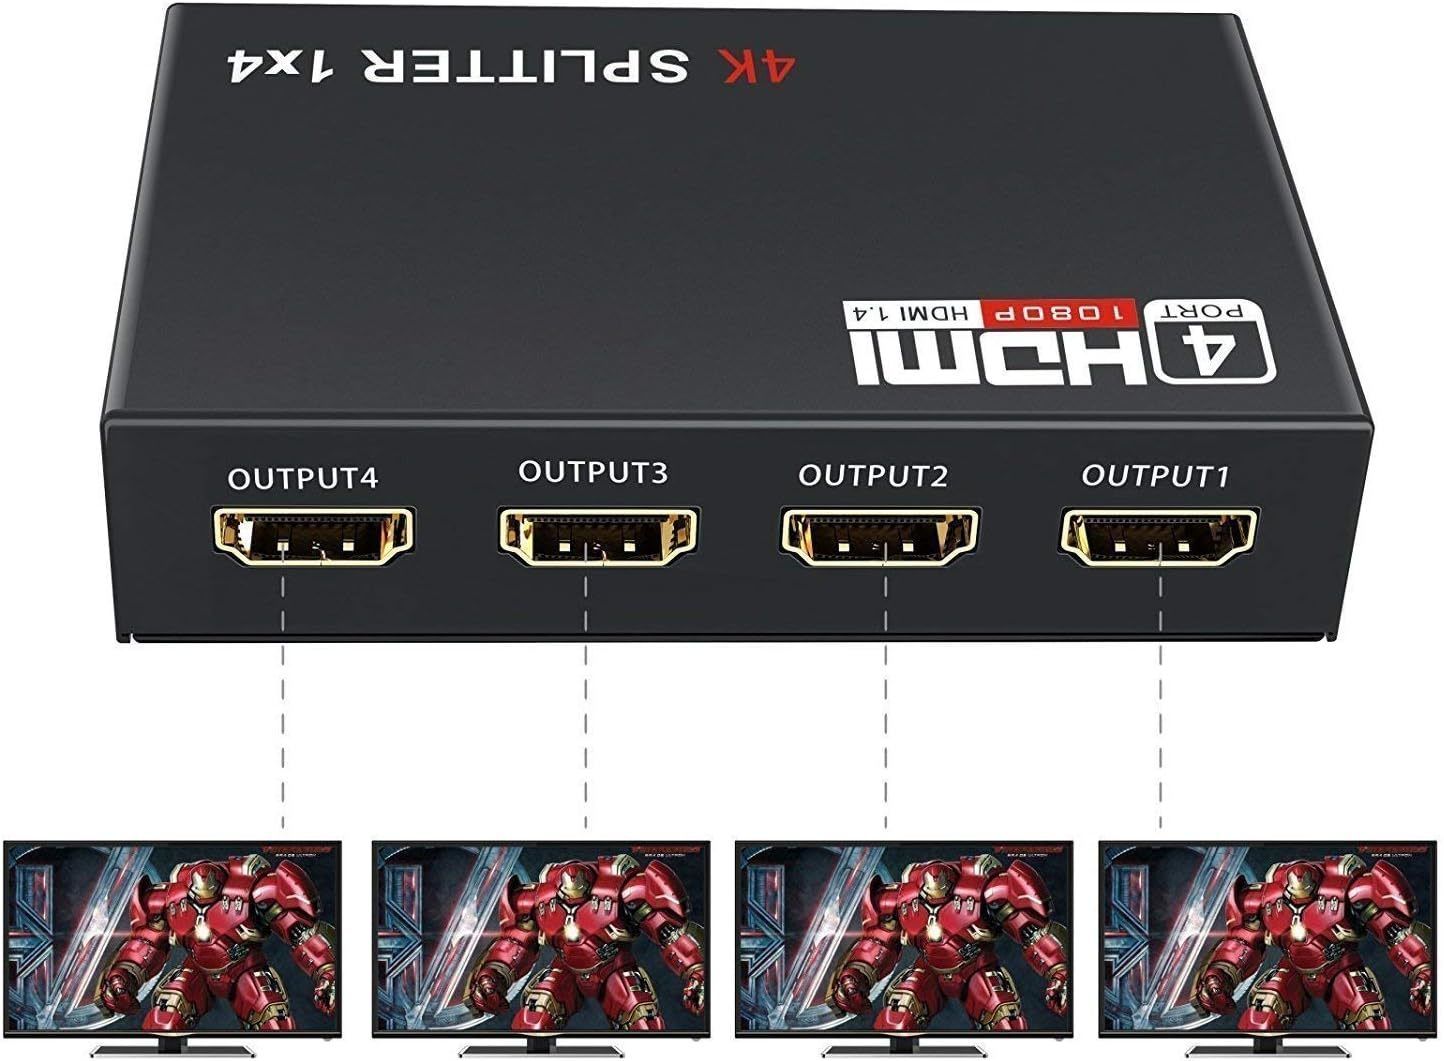 HDMI splitter 1-4 portů, kovový, bez napájecím adaptérem